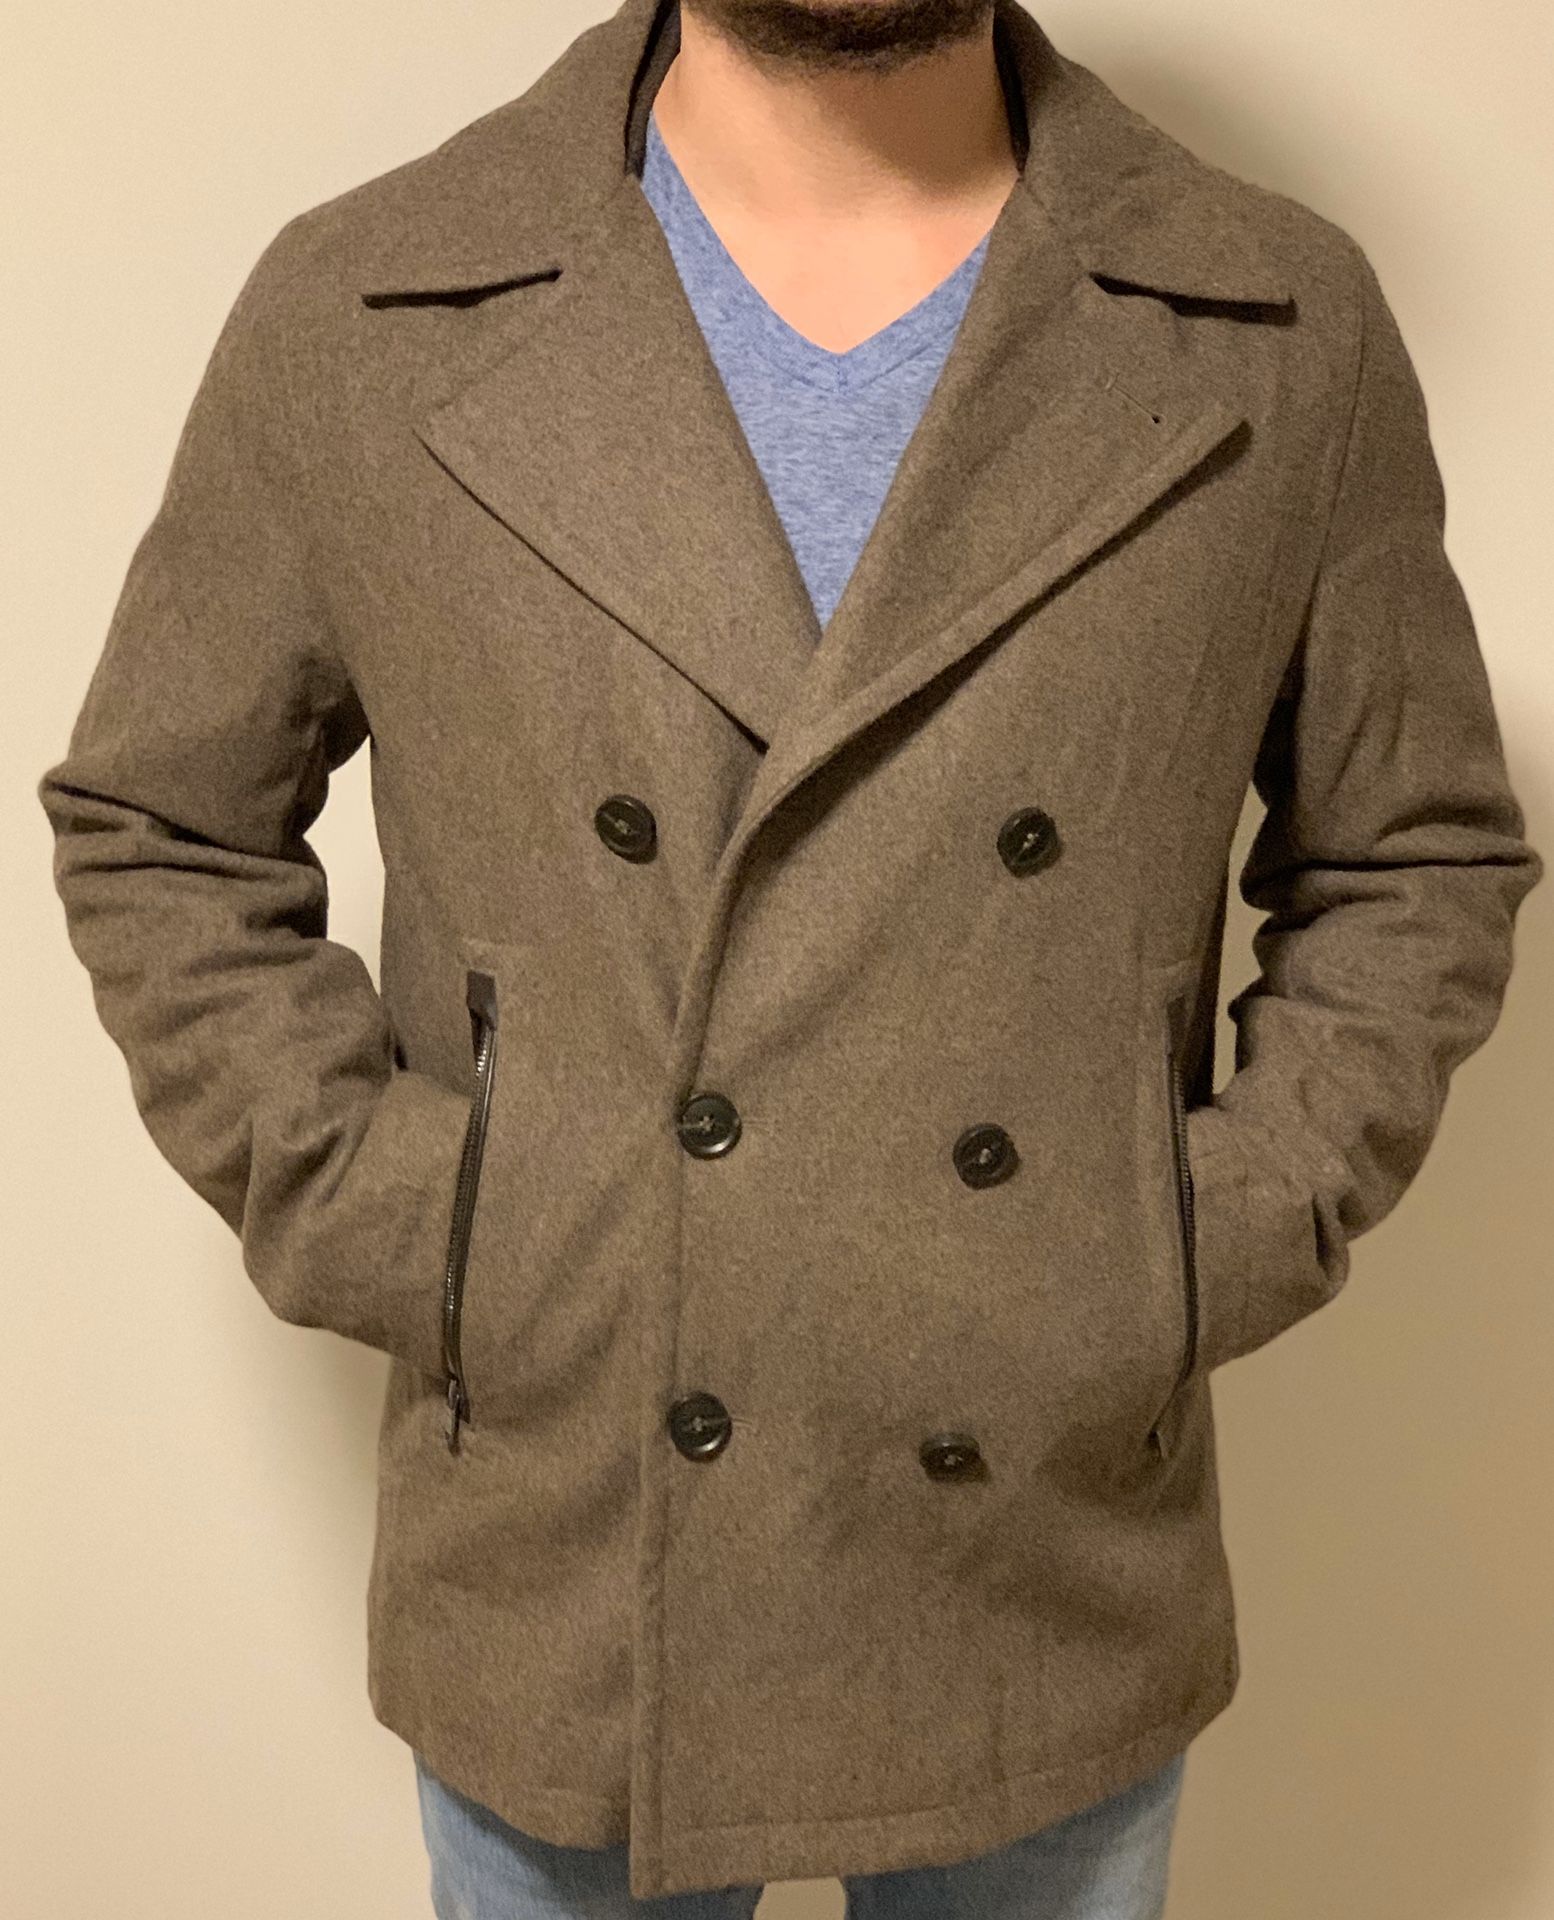 Michael Kors brown dress jacket coat formal. Mens man medium m